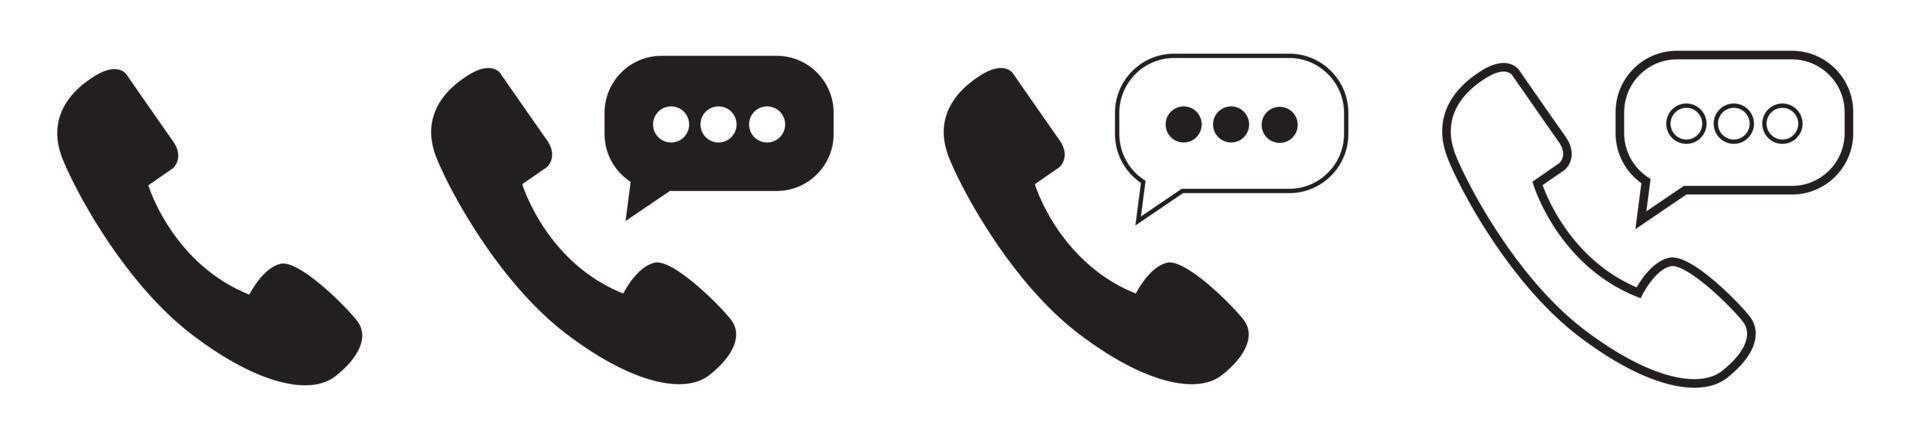 conjunto de ícones de telefone, indicativo de chamada telefônica, entre em contato conosco, ilustração vetorial vetor